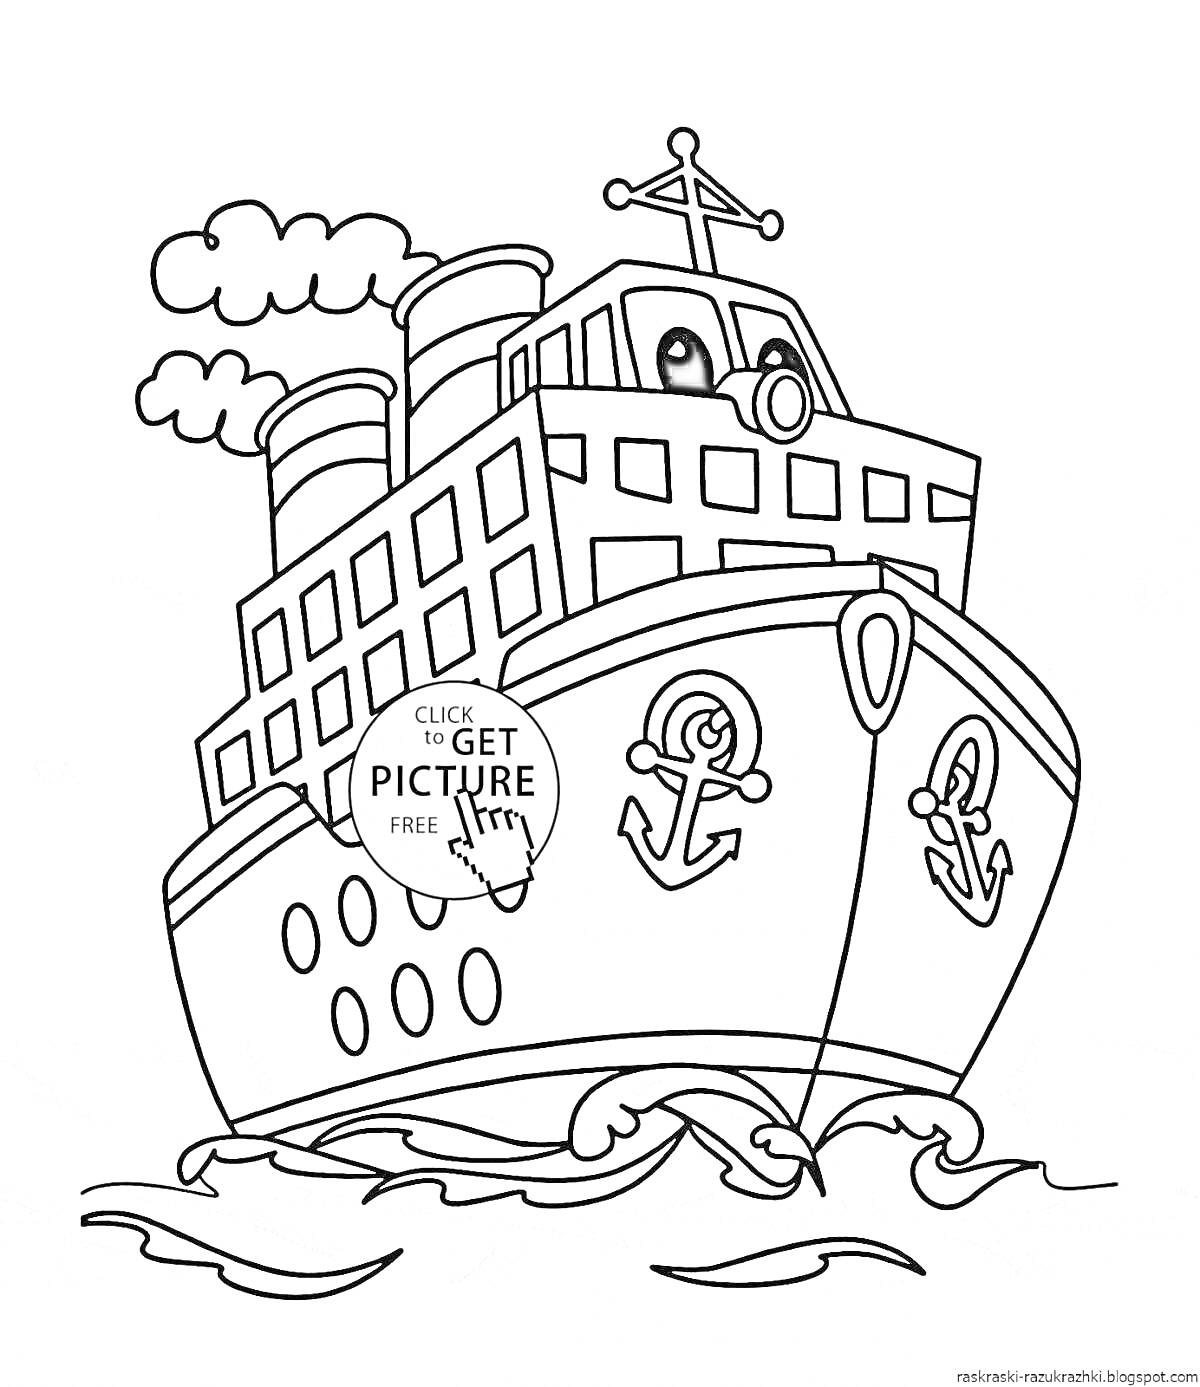 Раскраска Тягач на воде с дымящимися трубами, якорями и окнами, плывущий по волнам.